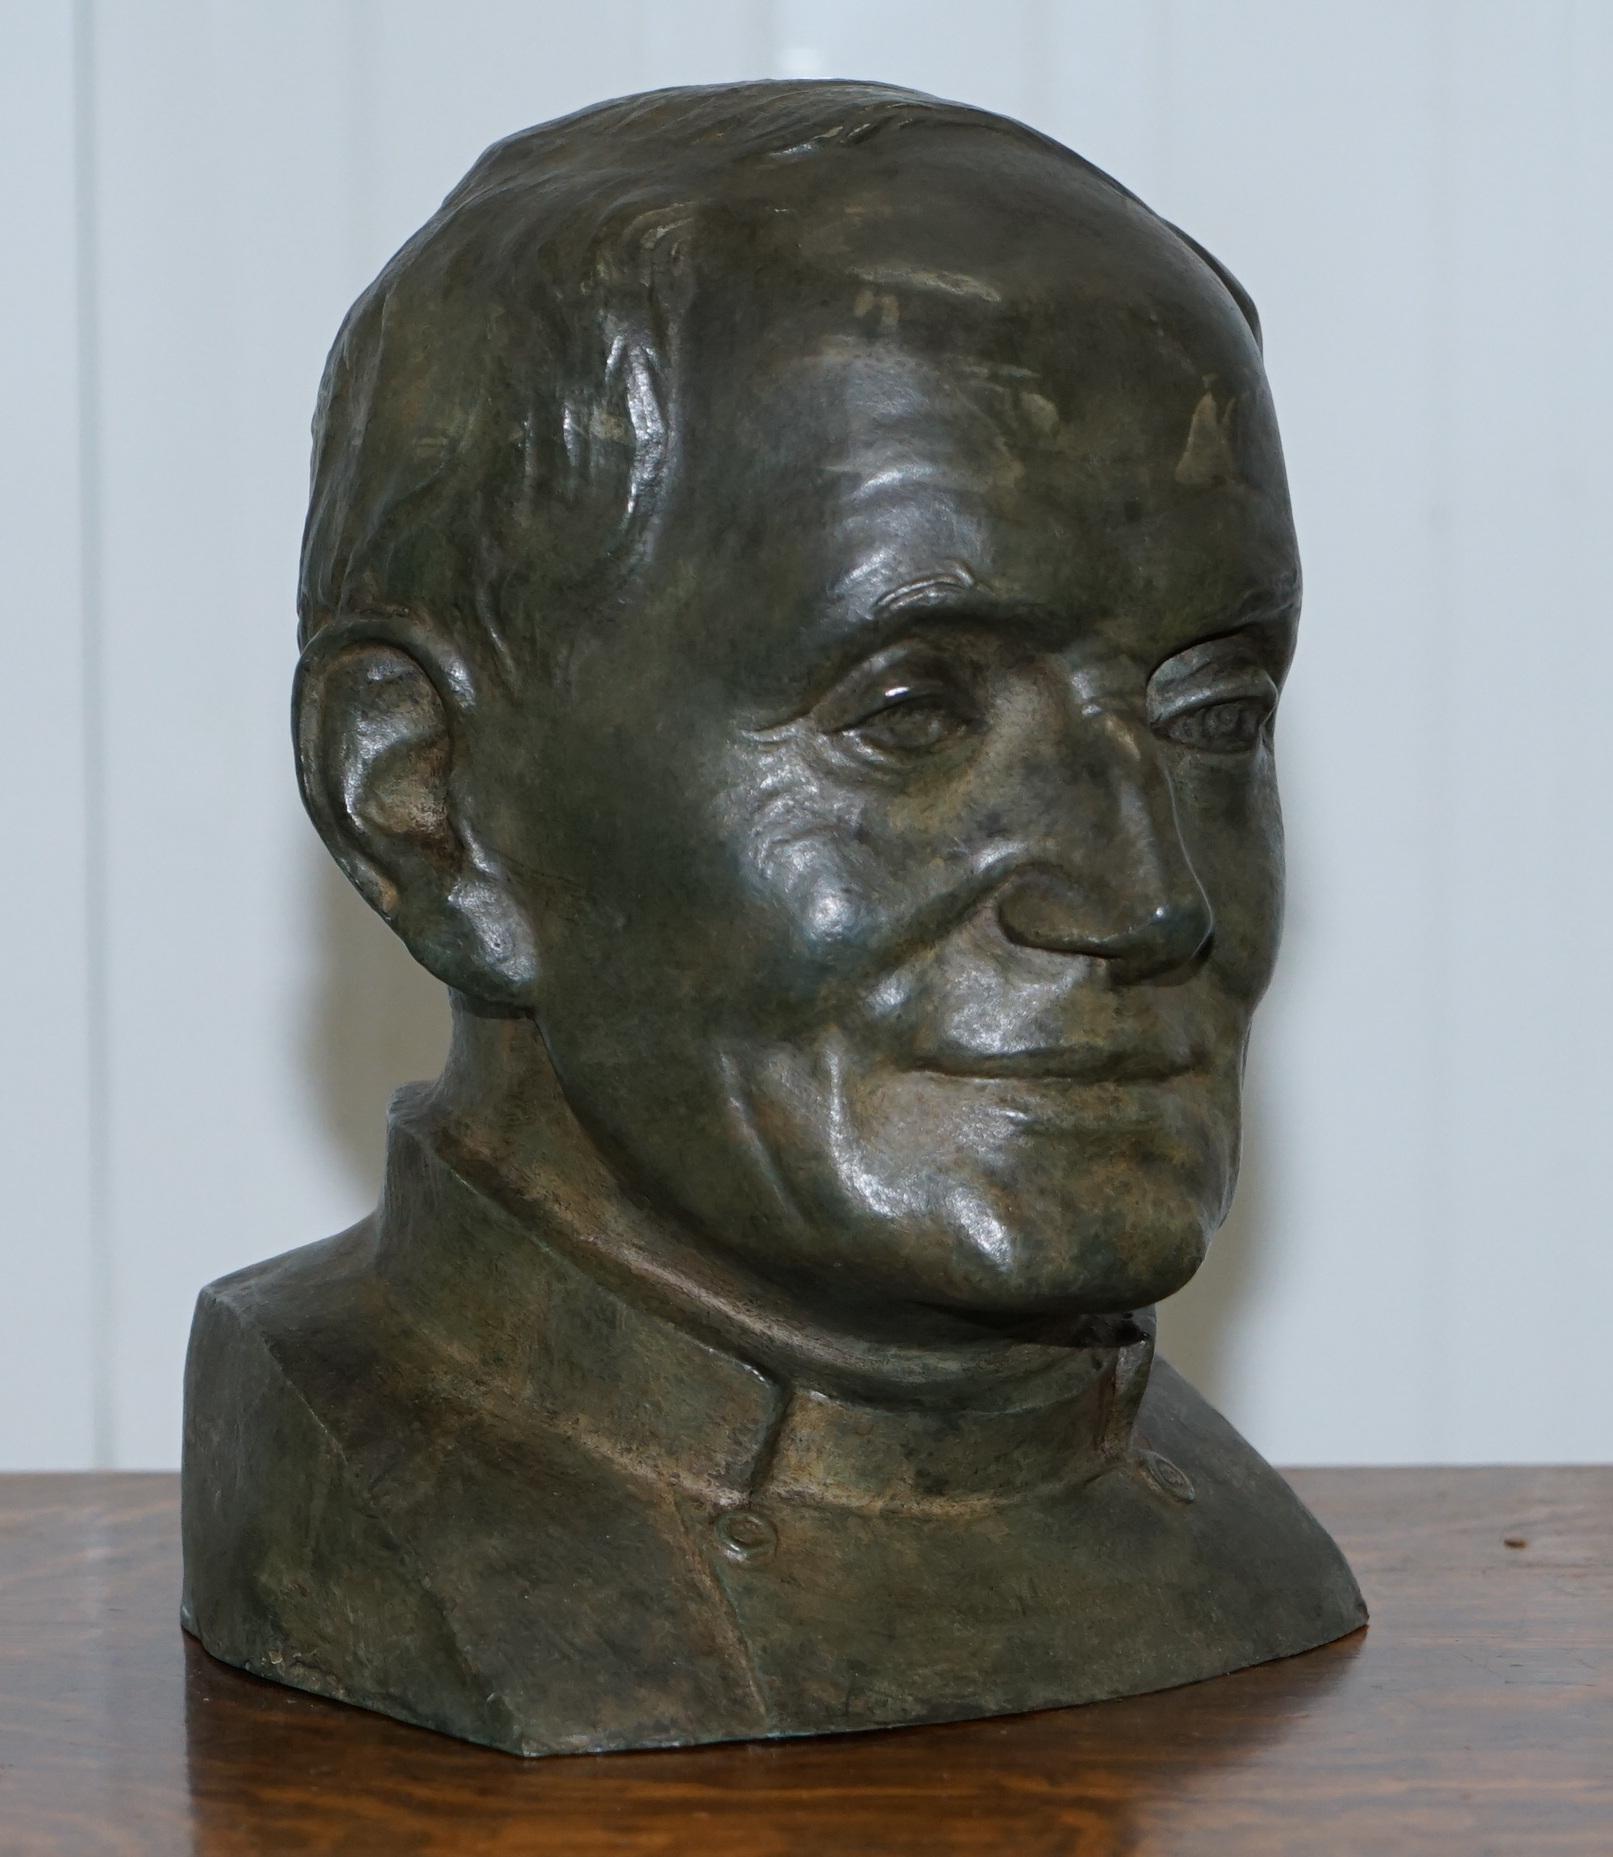 Wir freuen uns, diesen schönen und sehr seltenen Bronzekopf eines russischen Priesters mit einem Papier Label von der sehr berühmten James Bourlet & Son's LTD zum Verkauf anzubieten.

Dieser Kopf ist wunderschön modelliert, er ist so taktil, man